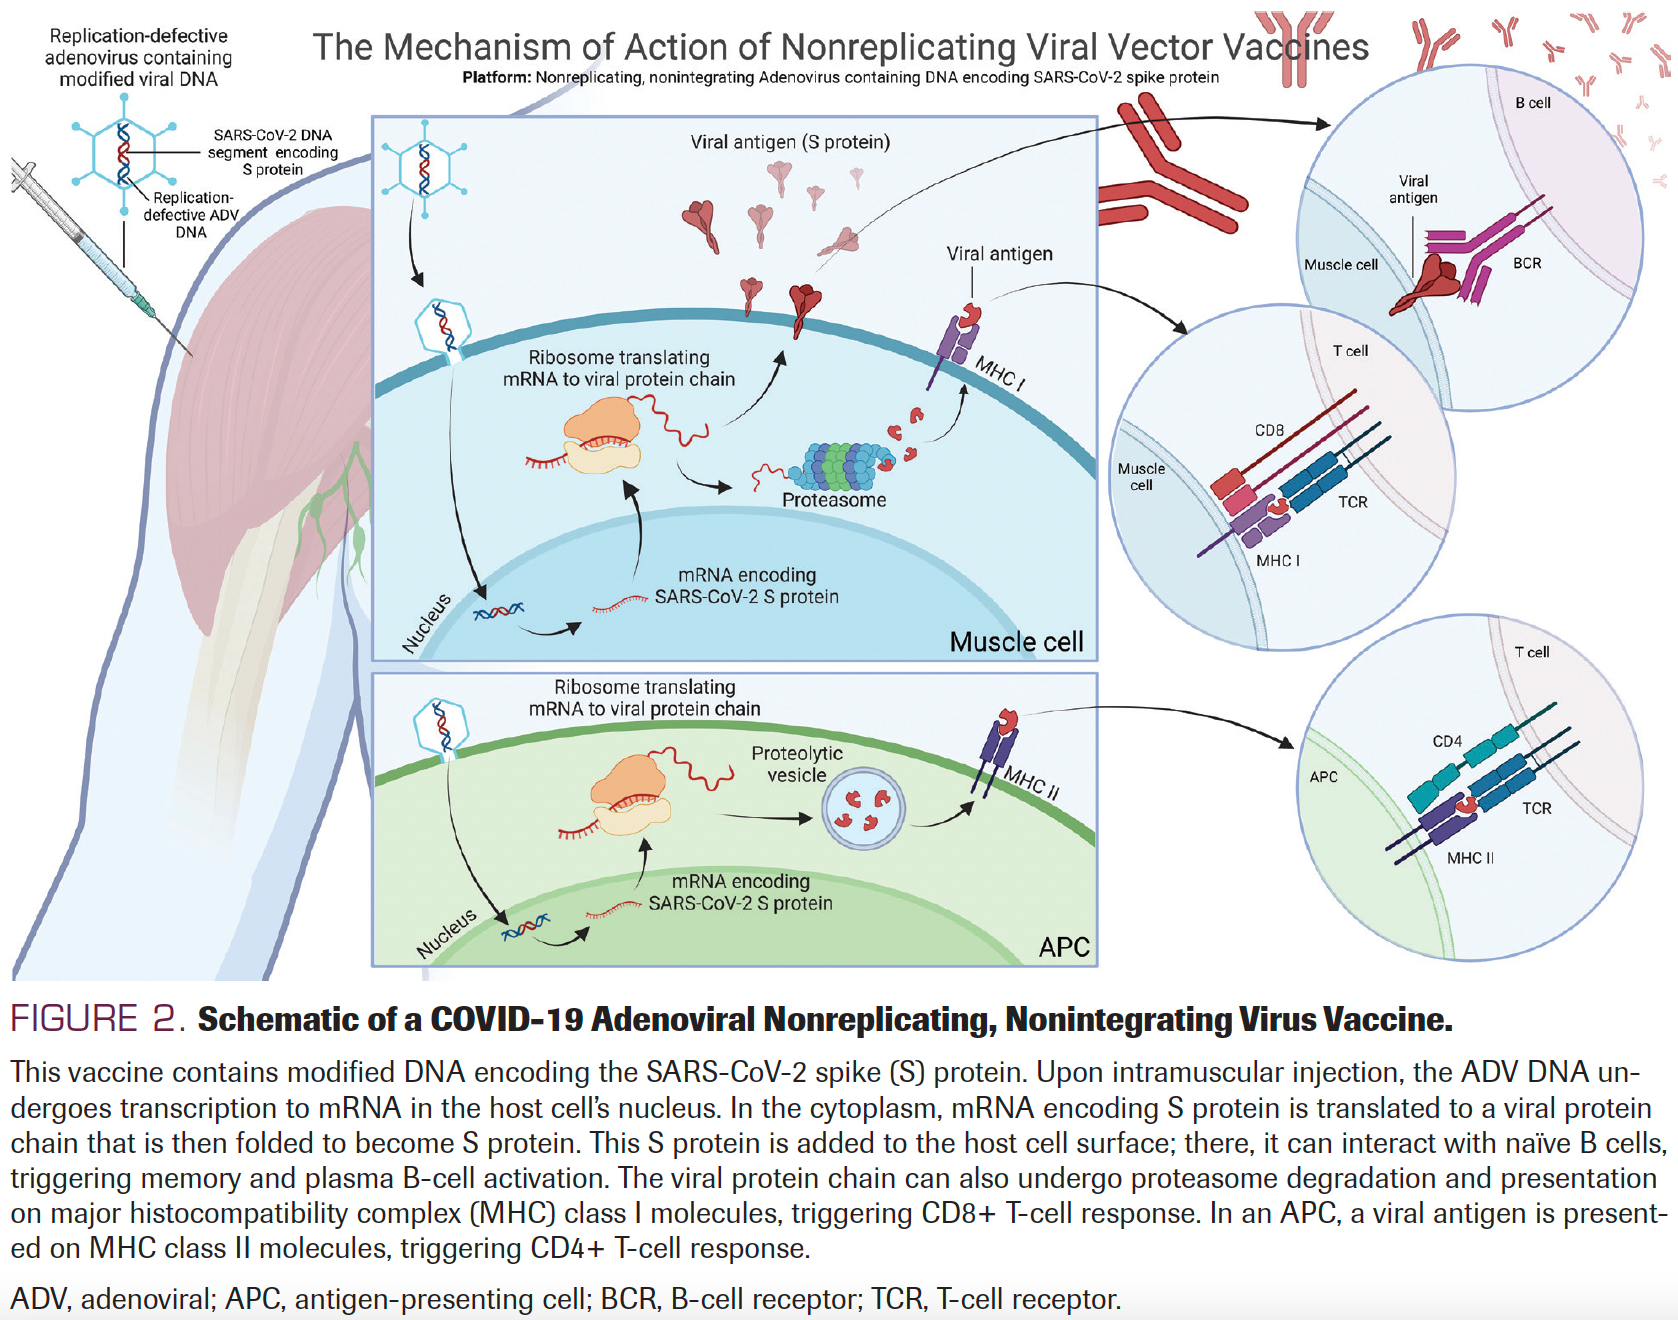 FIGURE 2. Schematic of a COVID-19 Adenoviral Nonreplicating, Nonintegrating Virus Vaccine